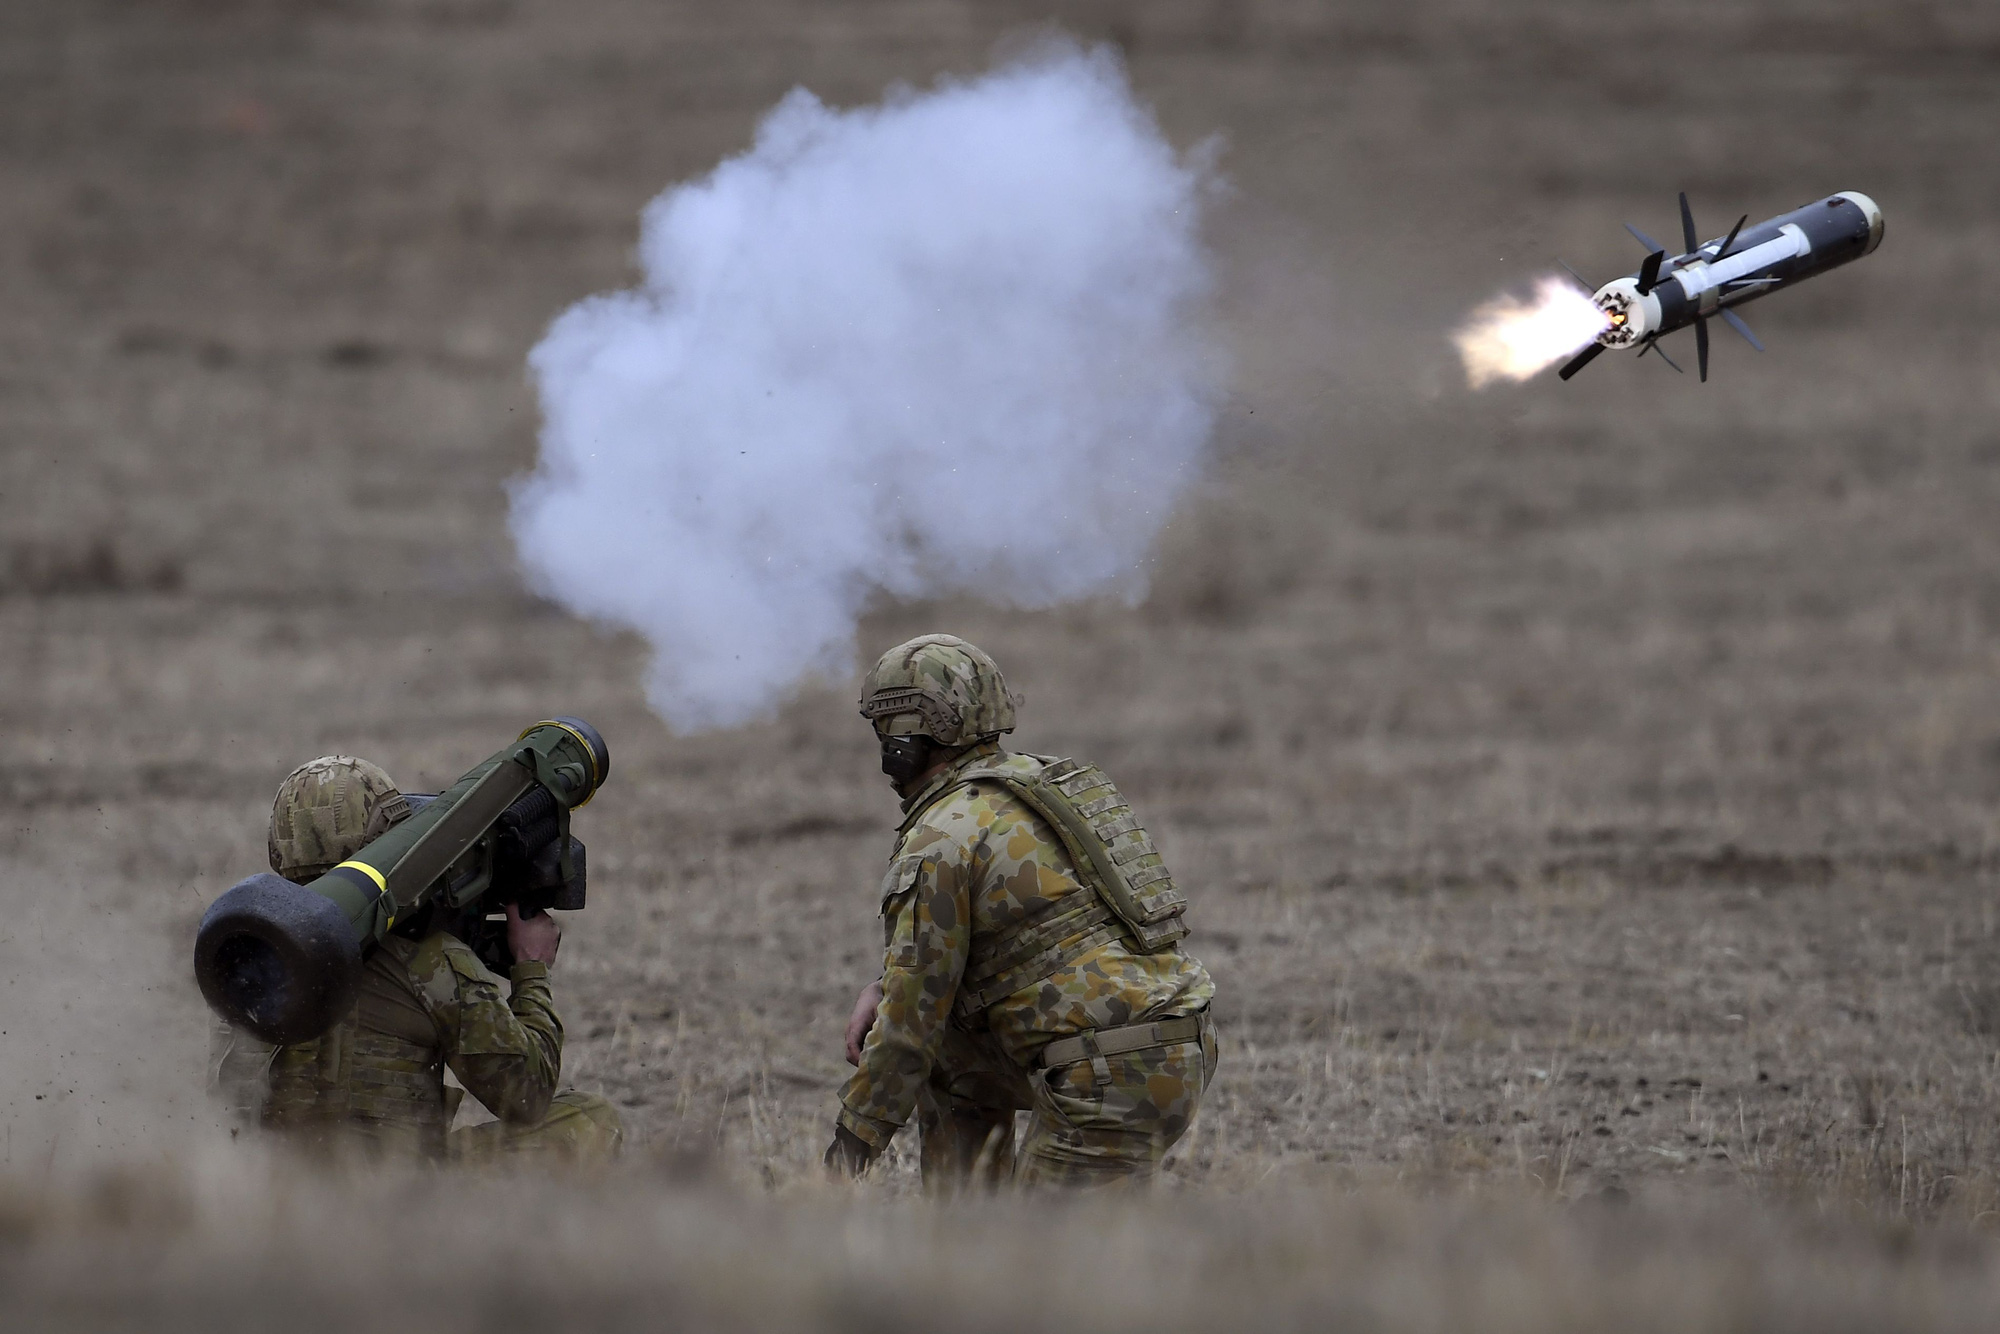 Kho tên lửa của Mỹ sắp cạn vì cung cấp cho Ukraine - Ảnh 1.